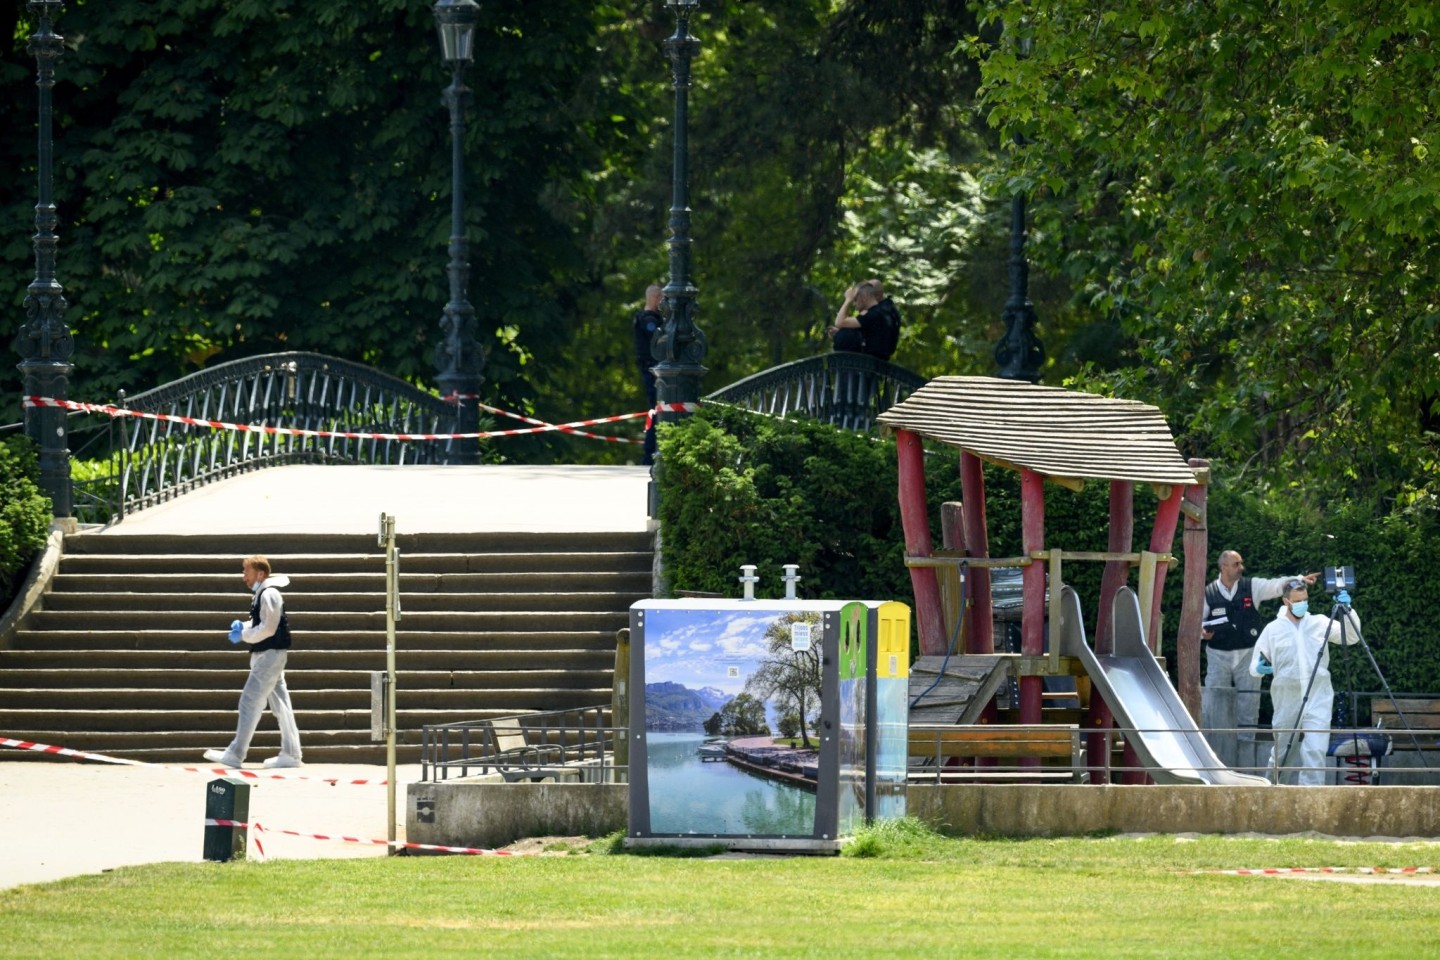 Polizisten ermitteln am Tatort nach einem Messerangriff in einem Park in Annecy.